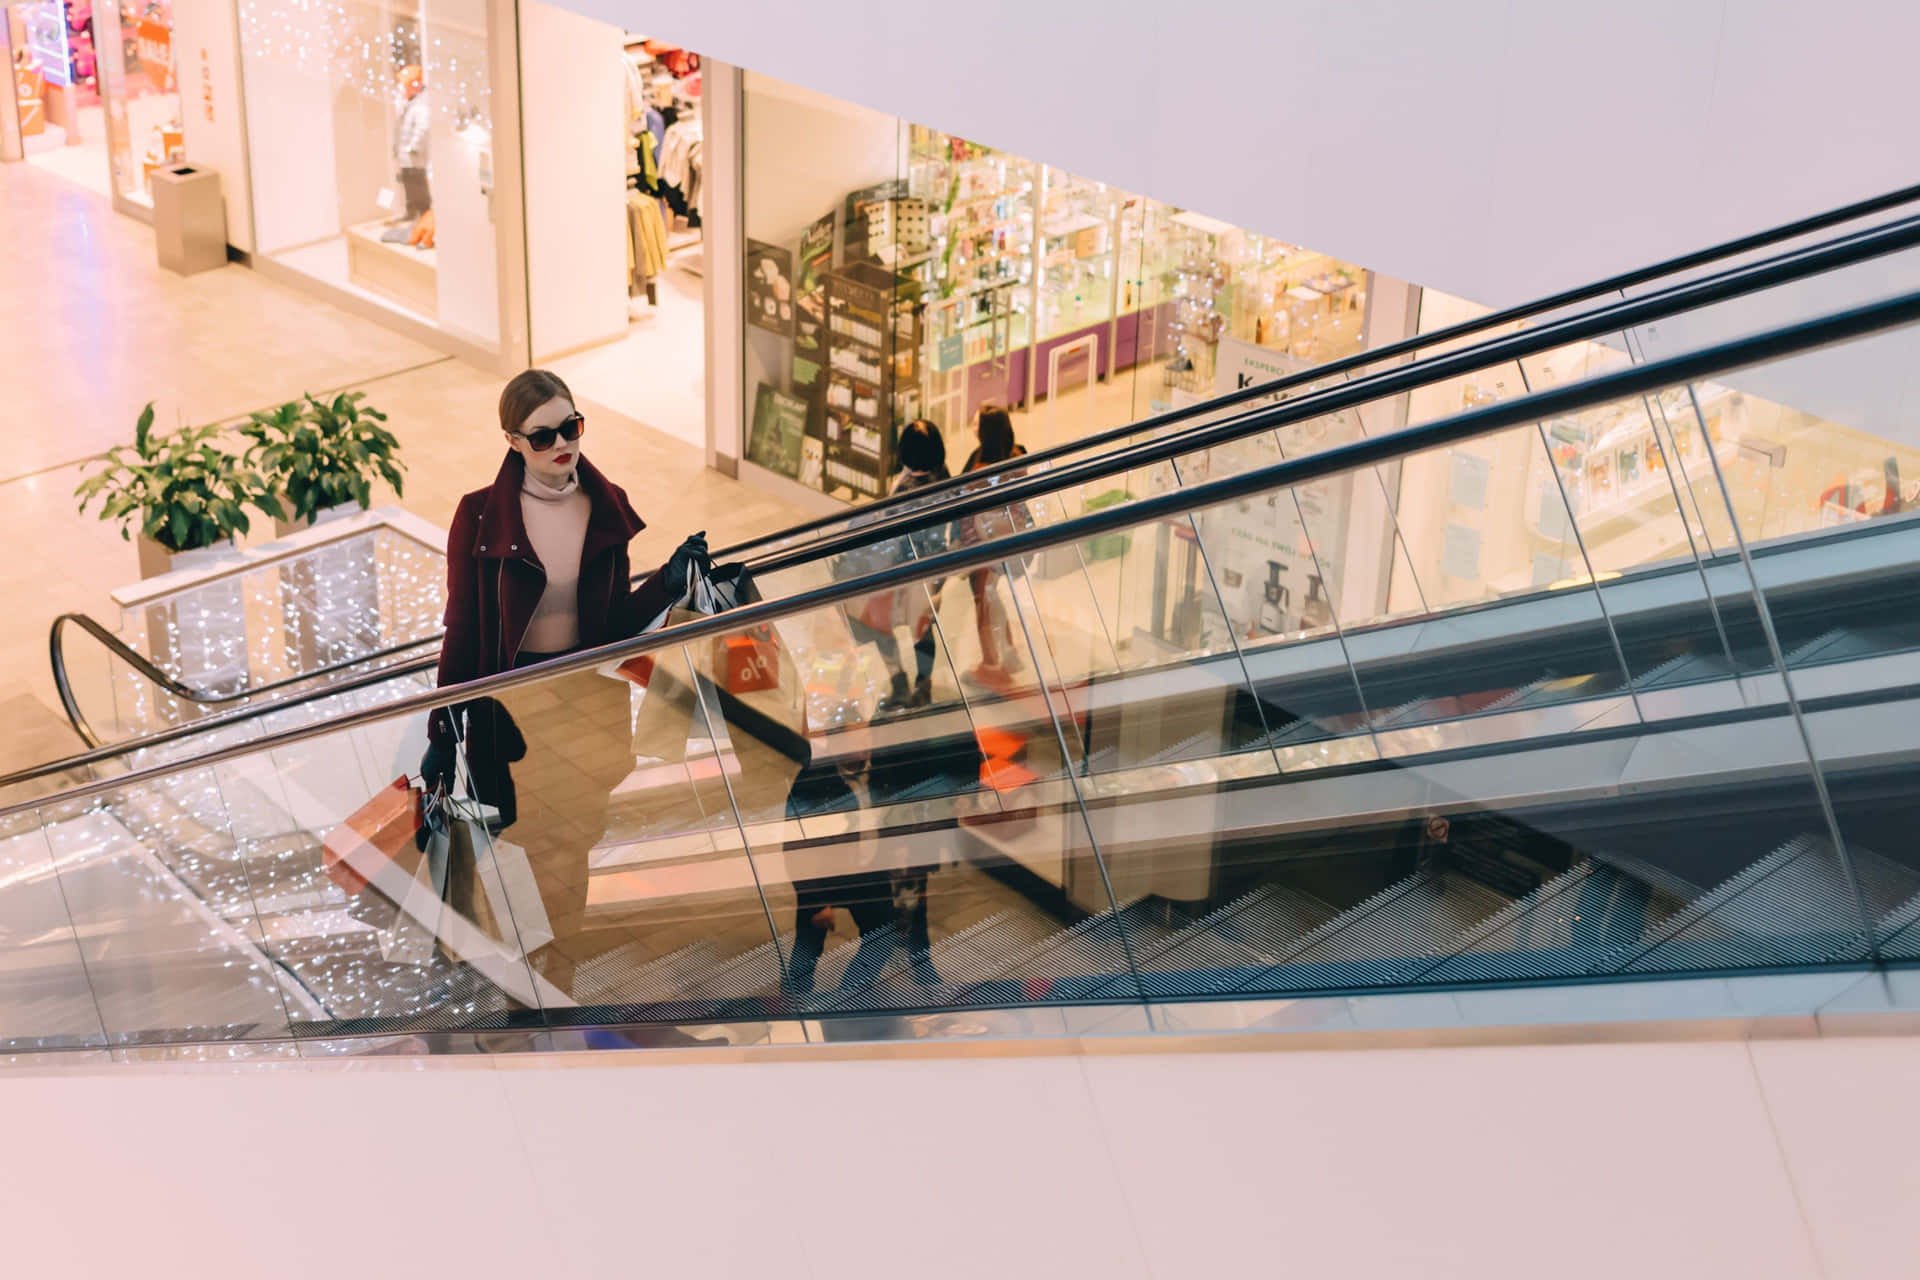 Einefrau Geht Eine Rolltreppe In Einem Einkaufszentrum Hinunter.